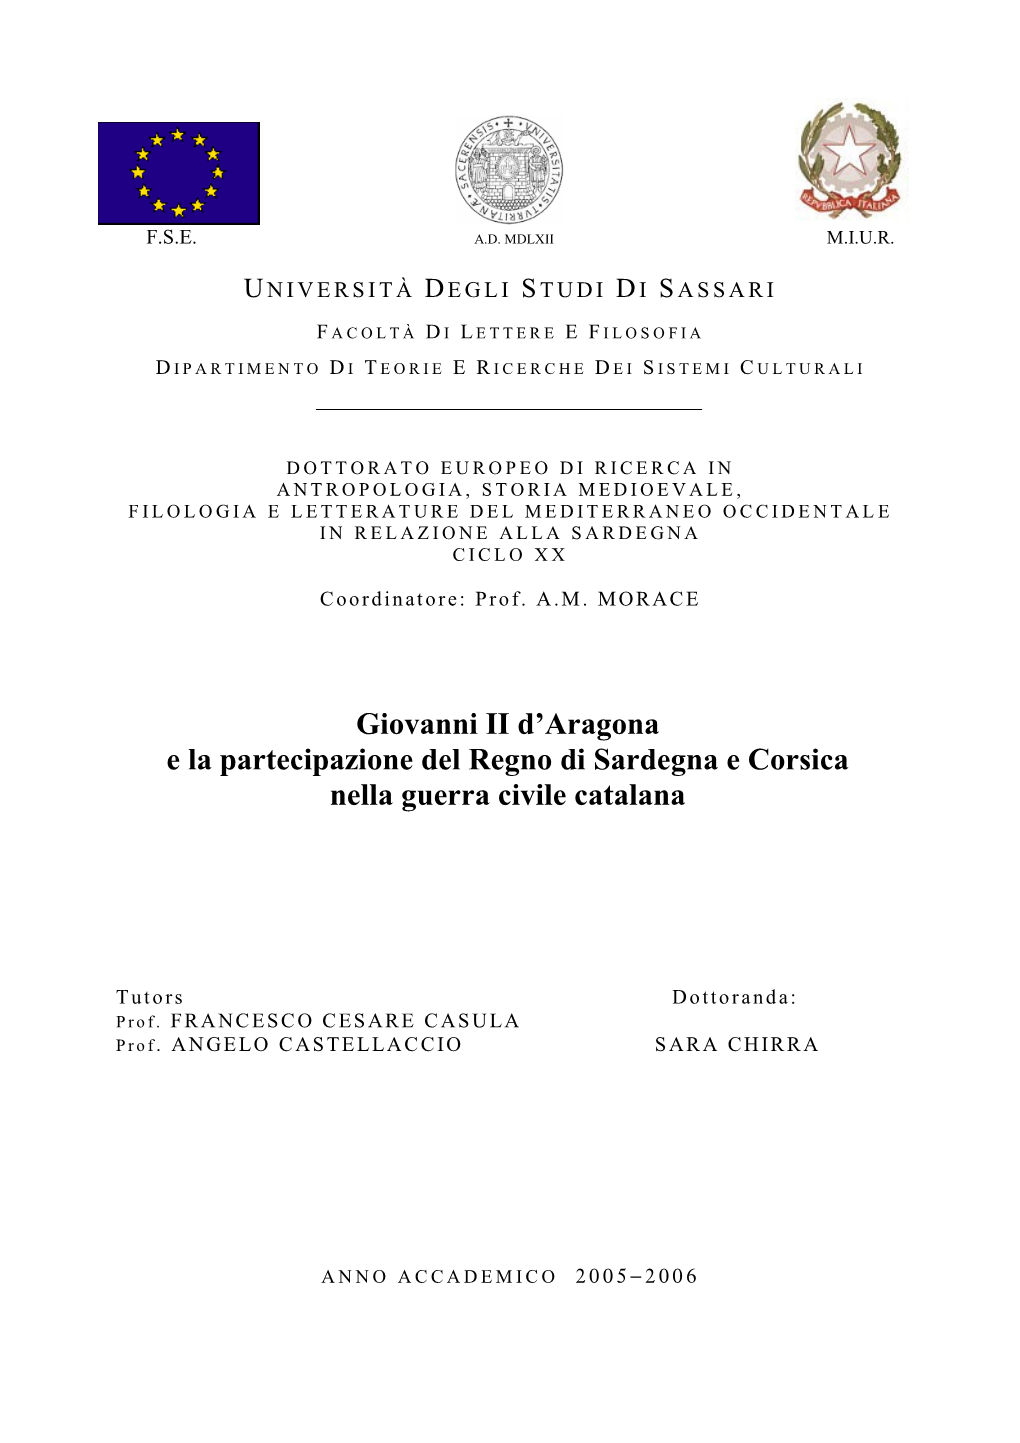 Giovanni II D'aragona E La Partecipazione Del Regno Di Sardegna E Corsica Nella Guerra Civile Catalana